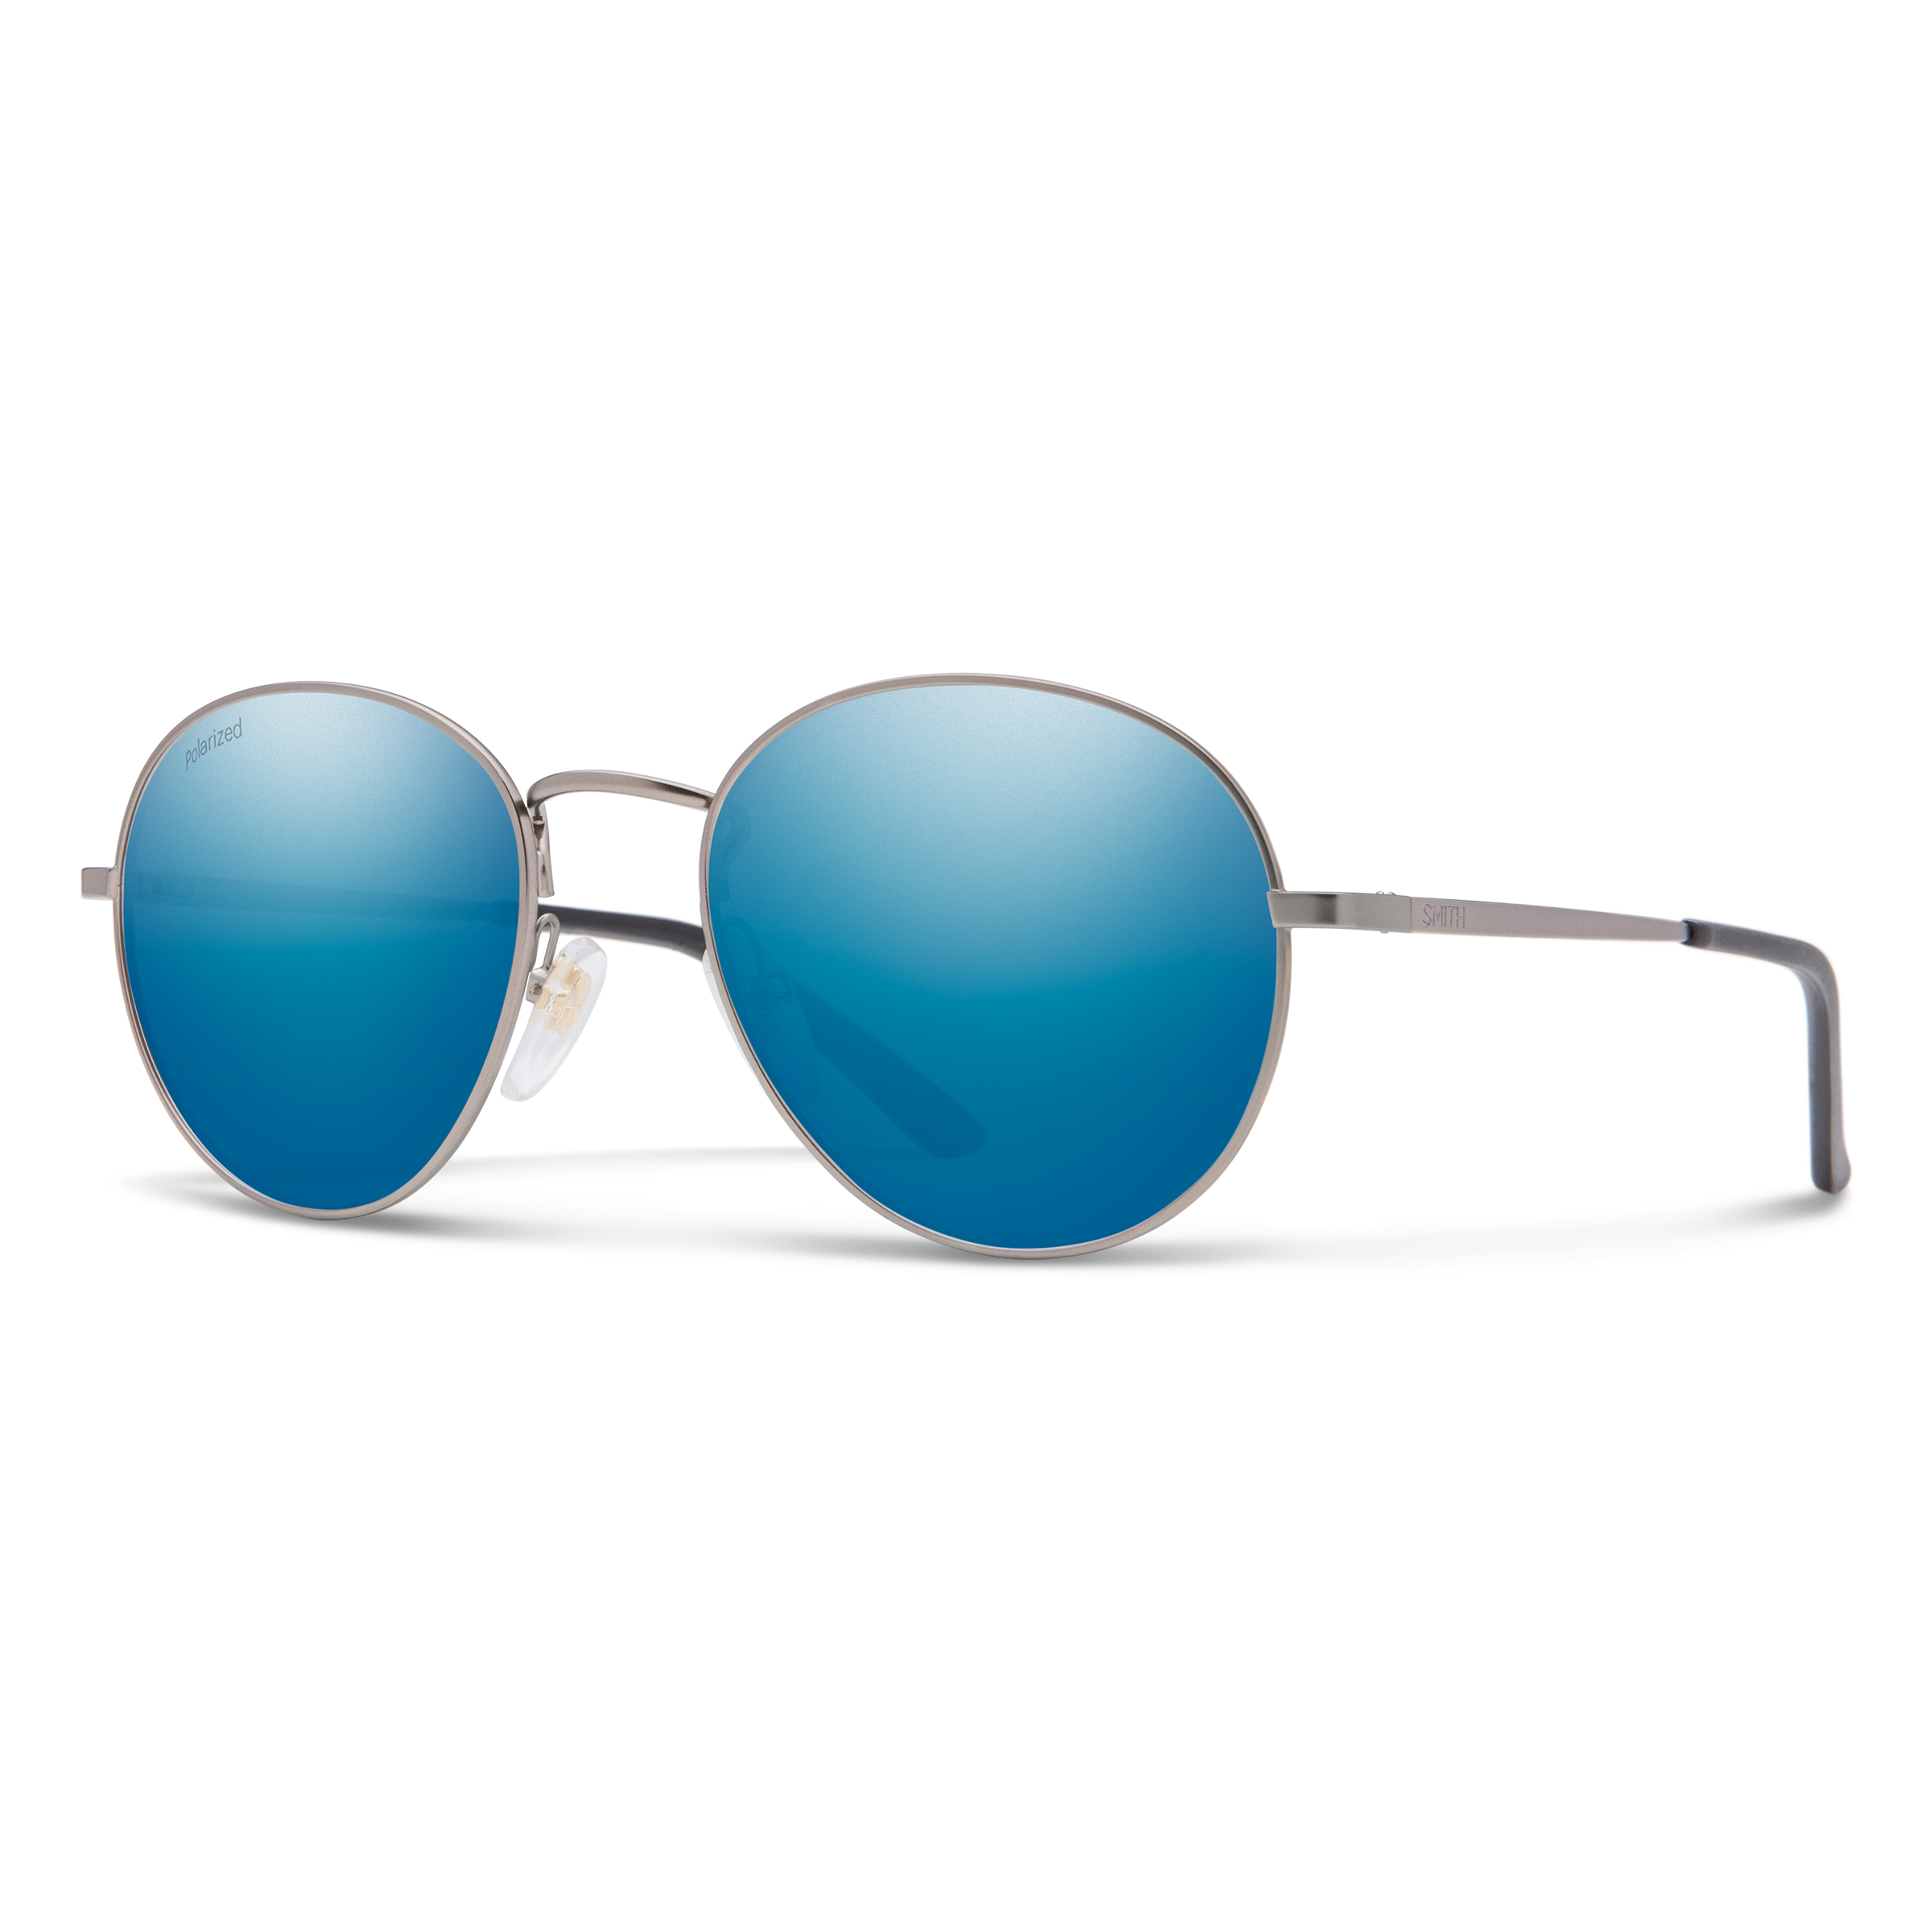 Bristol novità BA244 Rock Star occhiali da sole argento taglia unica 